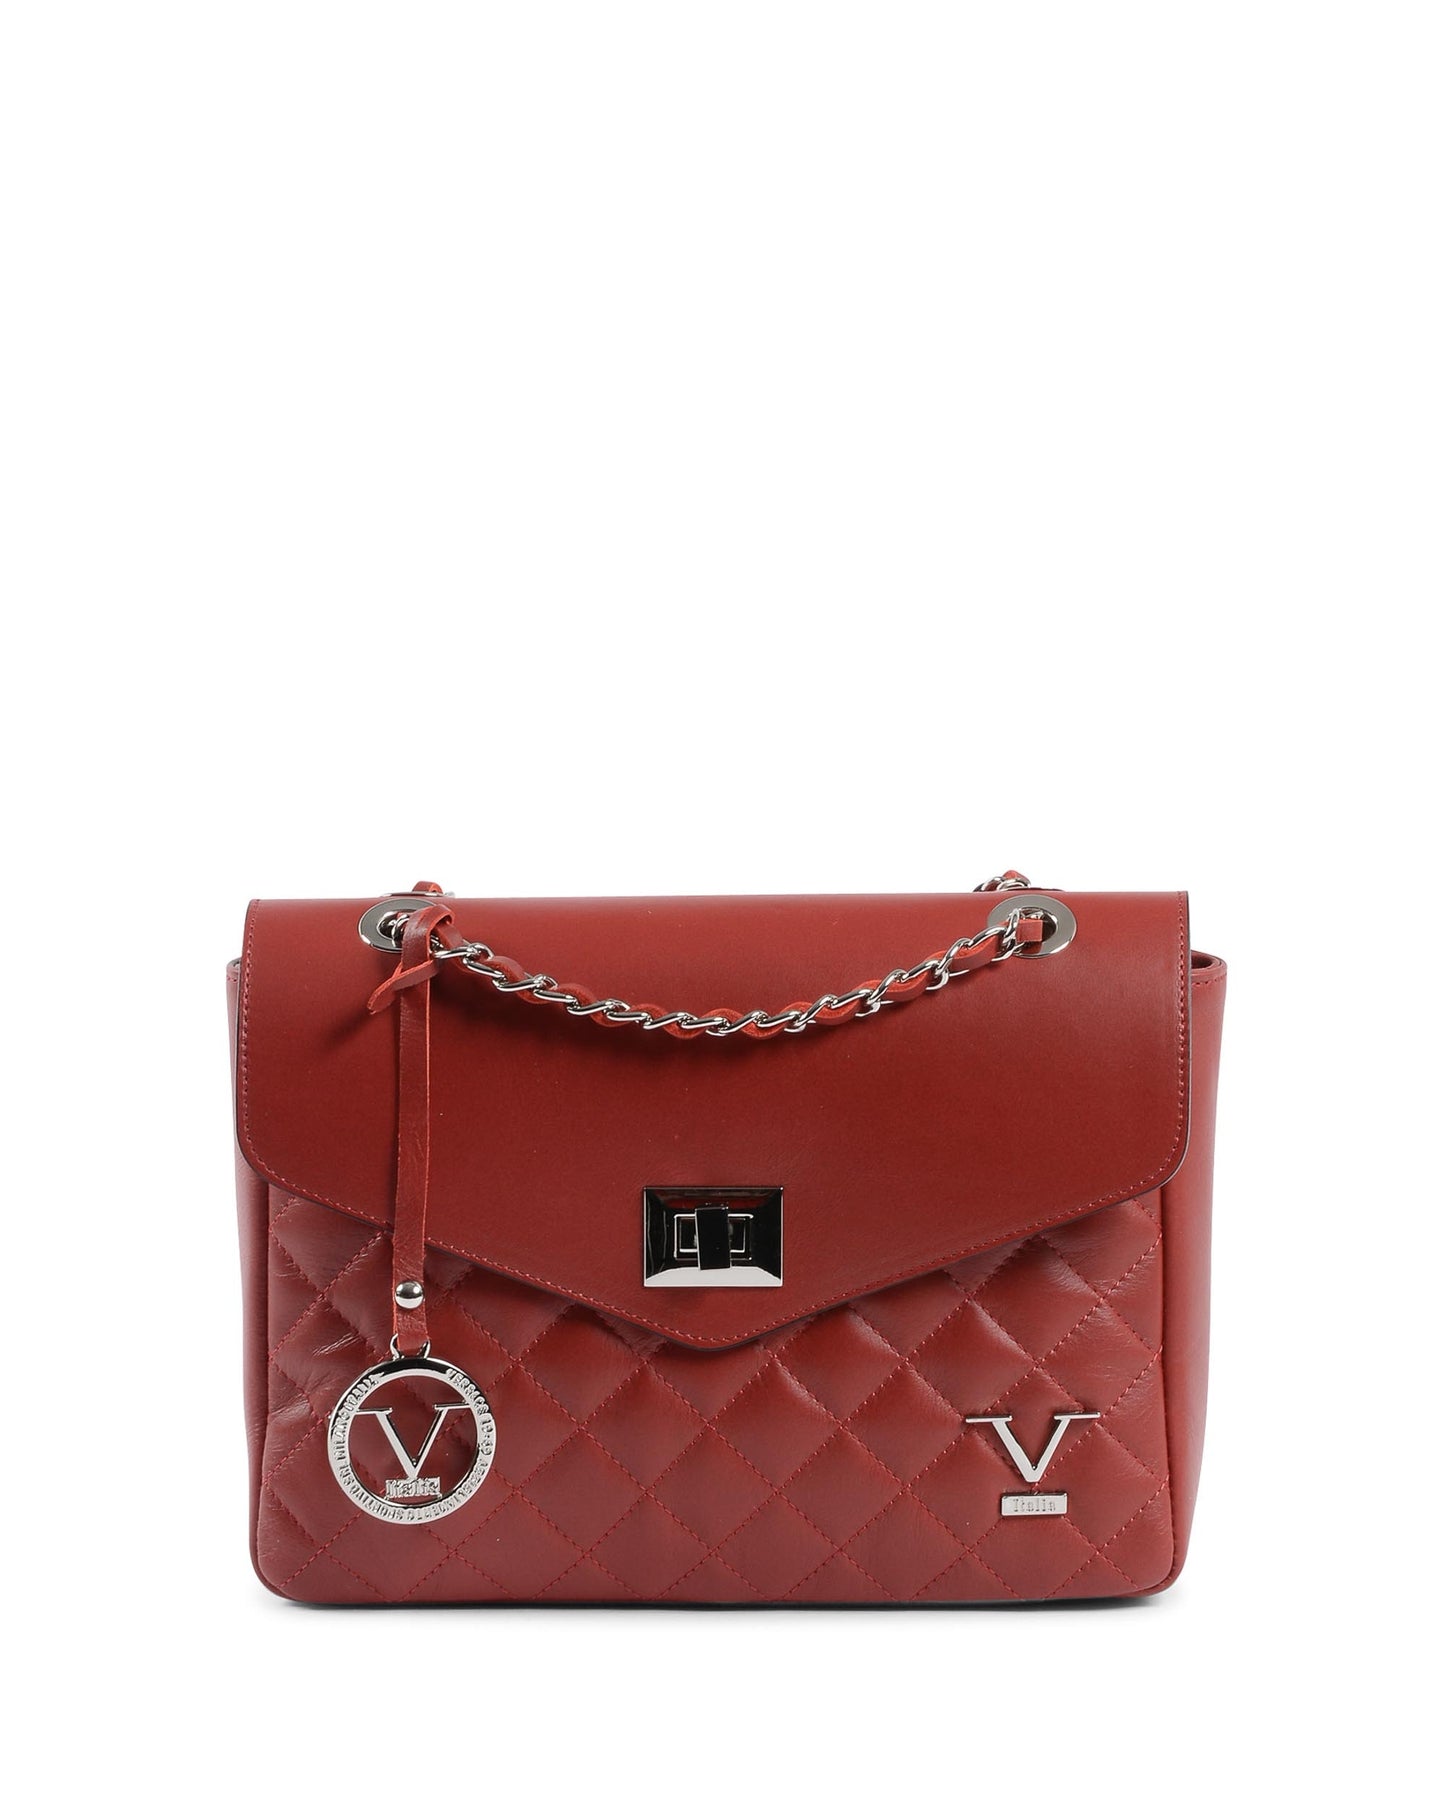 19V69 Italia Womens Handbag Dark Red V024-S SAUVAGE ROSSO INVERNALE